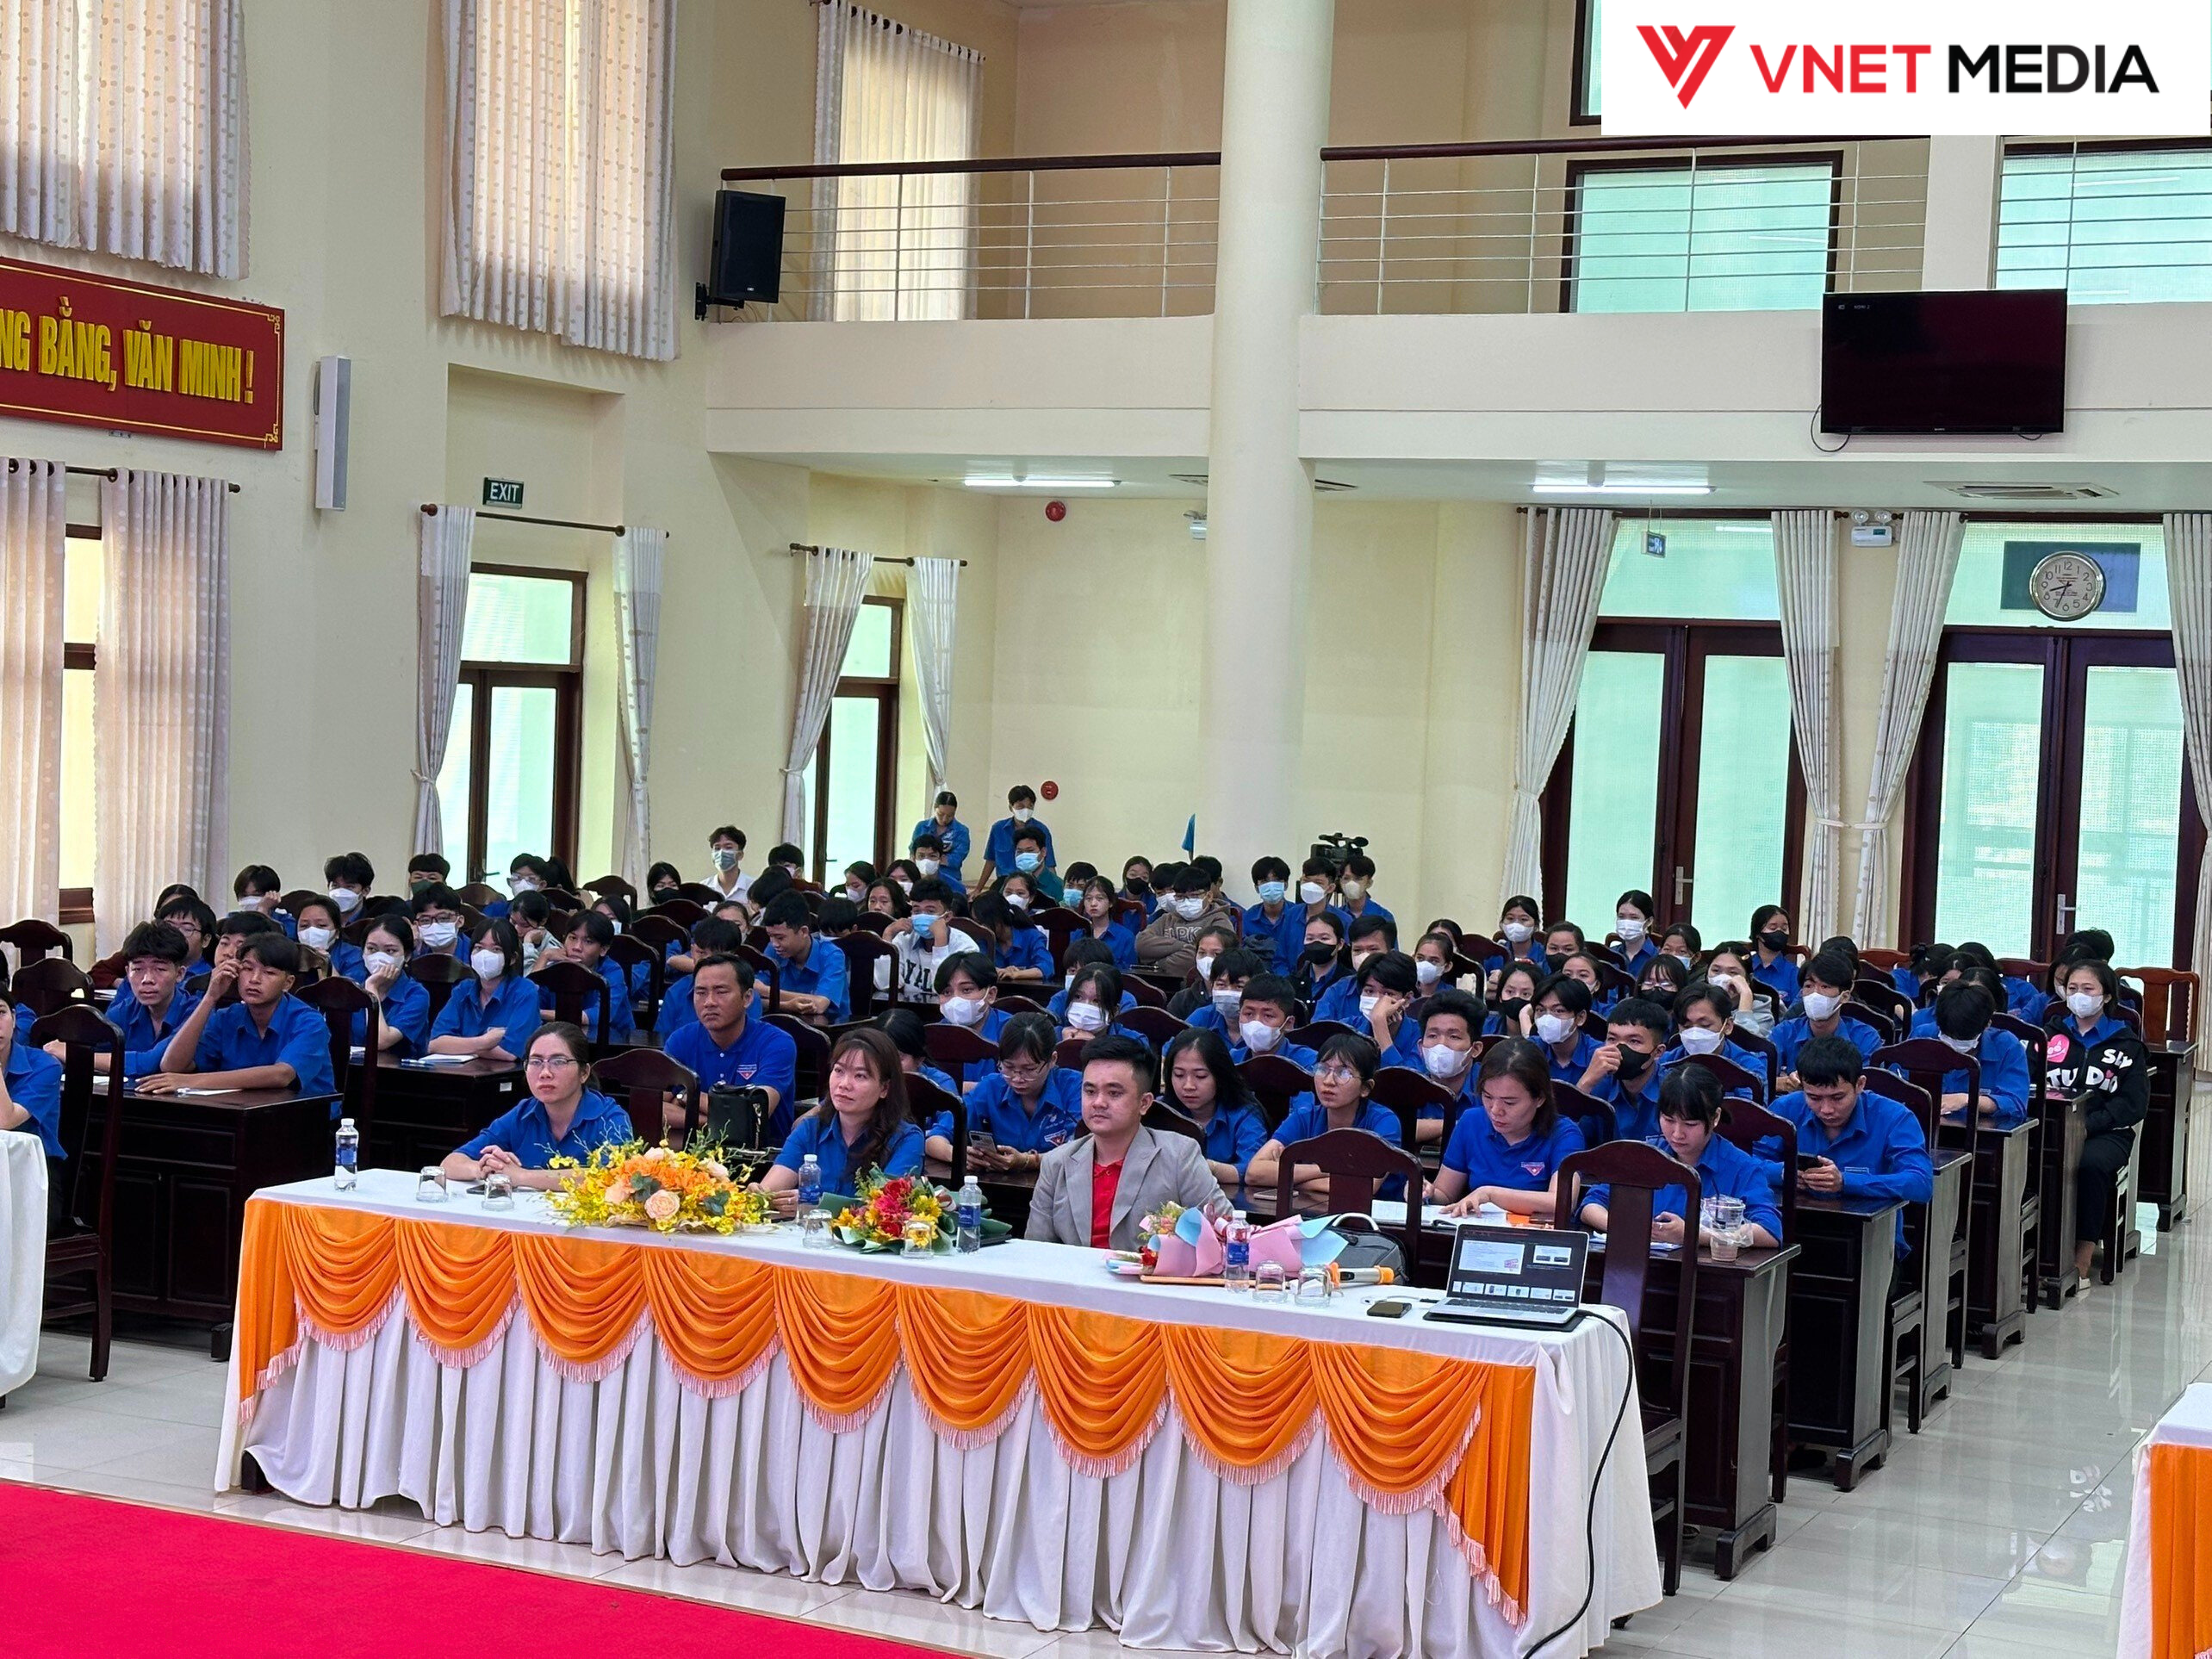 Vnet Media tổ chức một buổi tập huấn đặc biệt cho 150 cán bộ Đoàn, Hội, và đoàn viên thanh niên huyện Hớn Quản